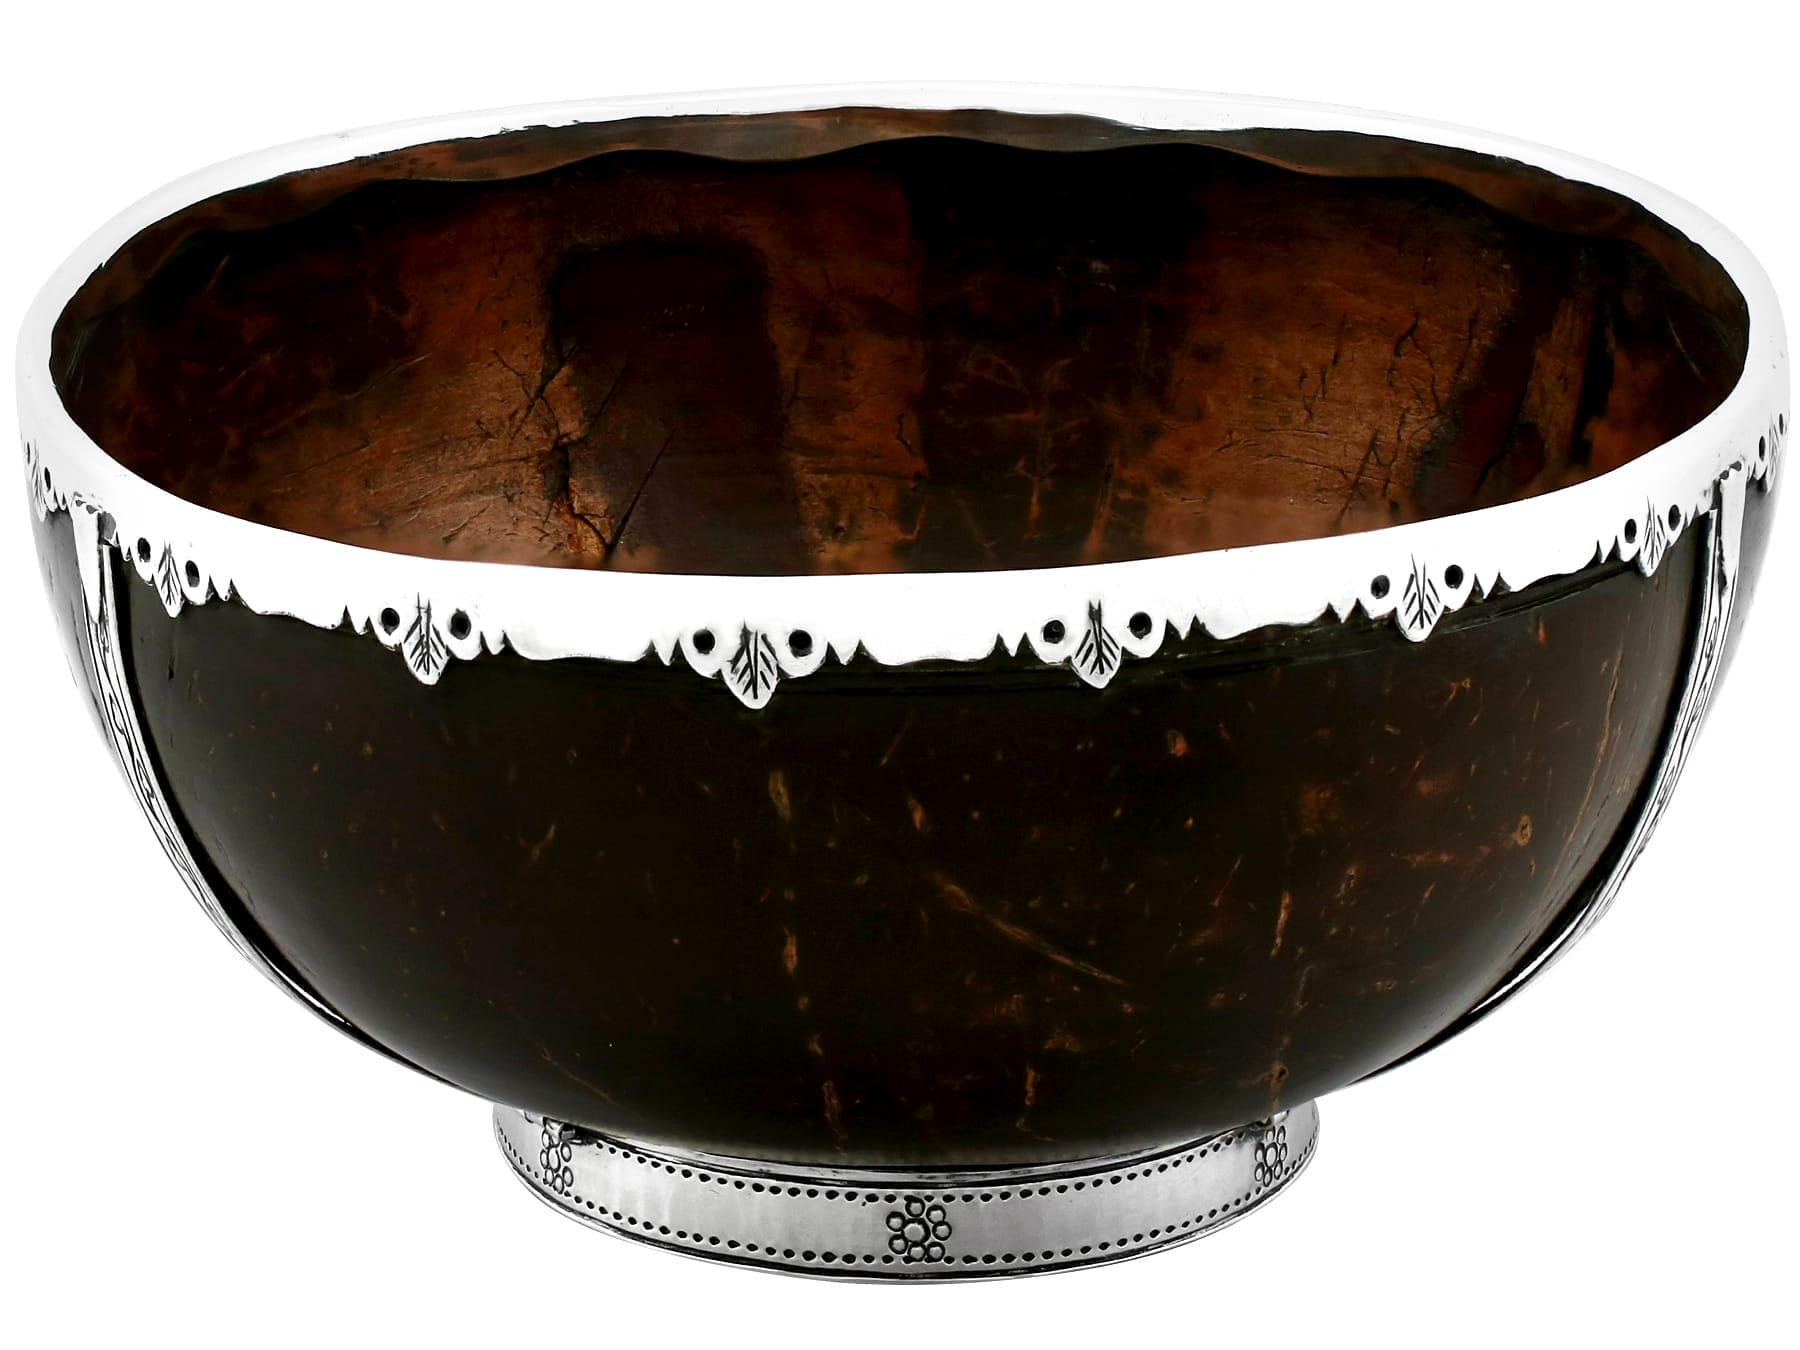 Eine außergewöhnliche, feine und beeindruckende antike englische Sterling Silber montiert Kokosnuss Tasse; eine Ergänzung zu unserer vielfältigen Silberwaren Sammlung.

Diese außergewöhnliche antike Kokosnuss-Schale aus Sterlingsilber hat eine